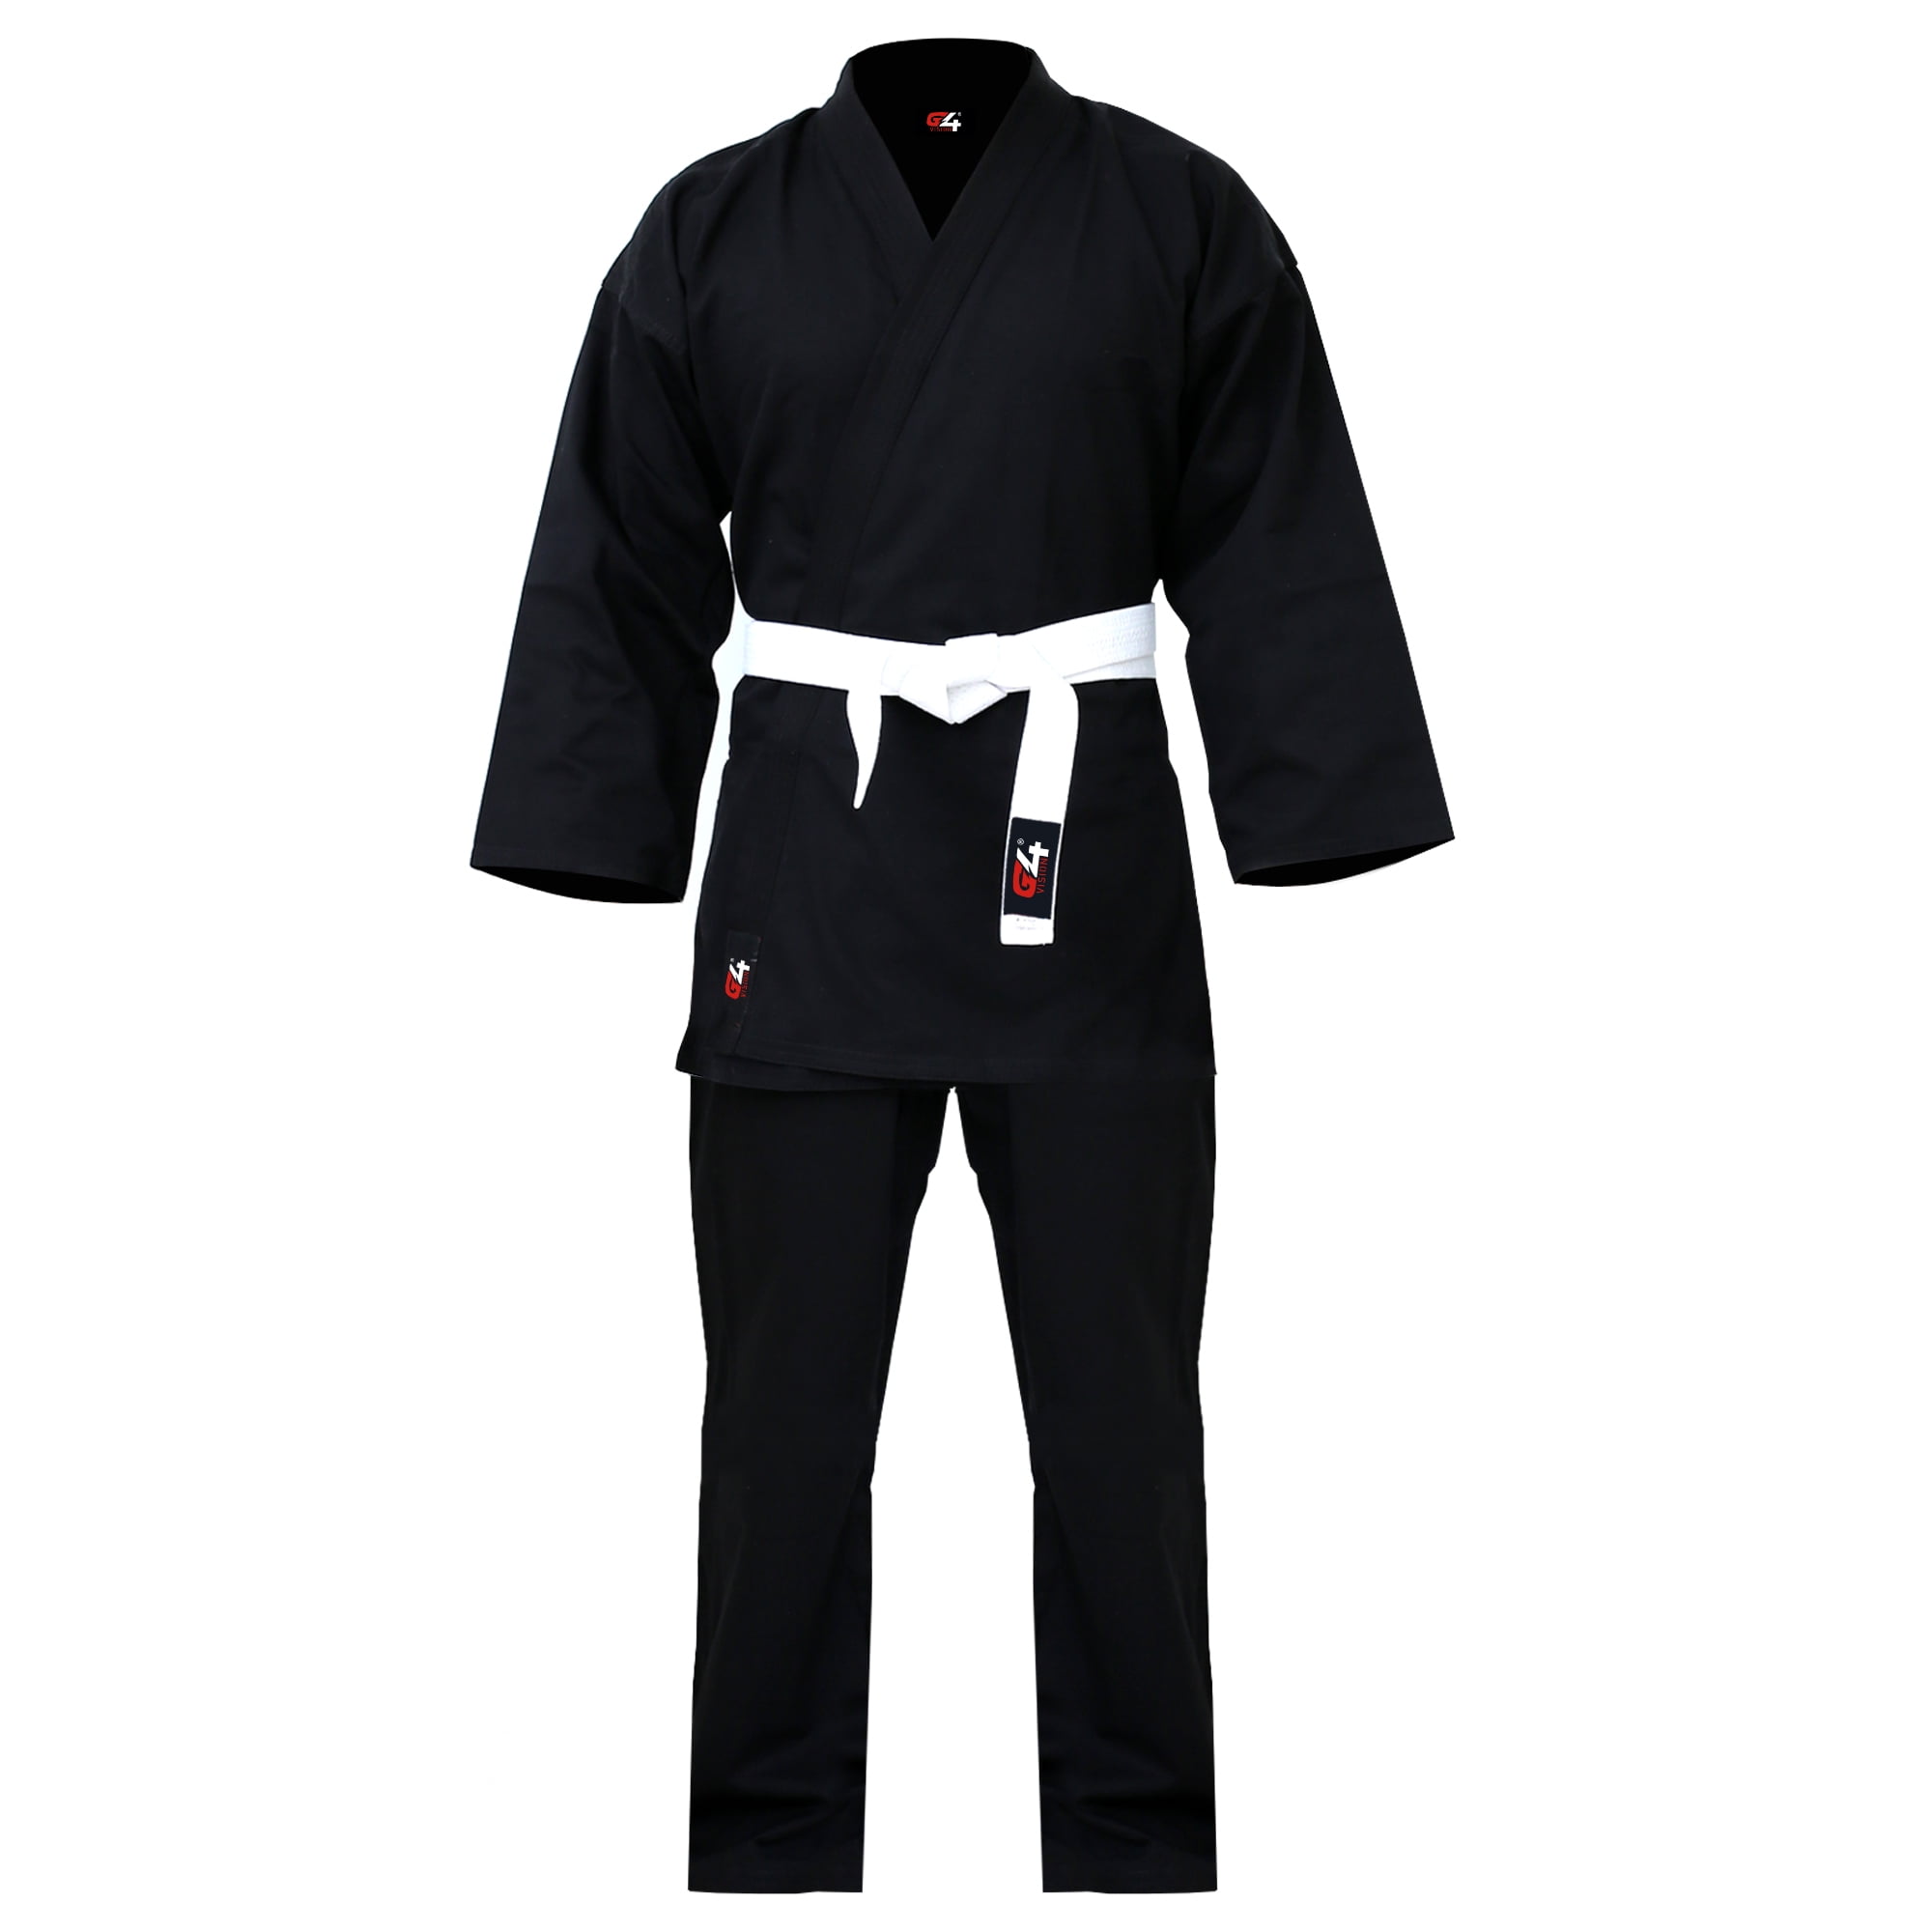 Karate Uniform+White Belt Training Outfit Kids Boy Girl Taekwondo Set size 0 